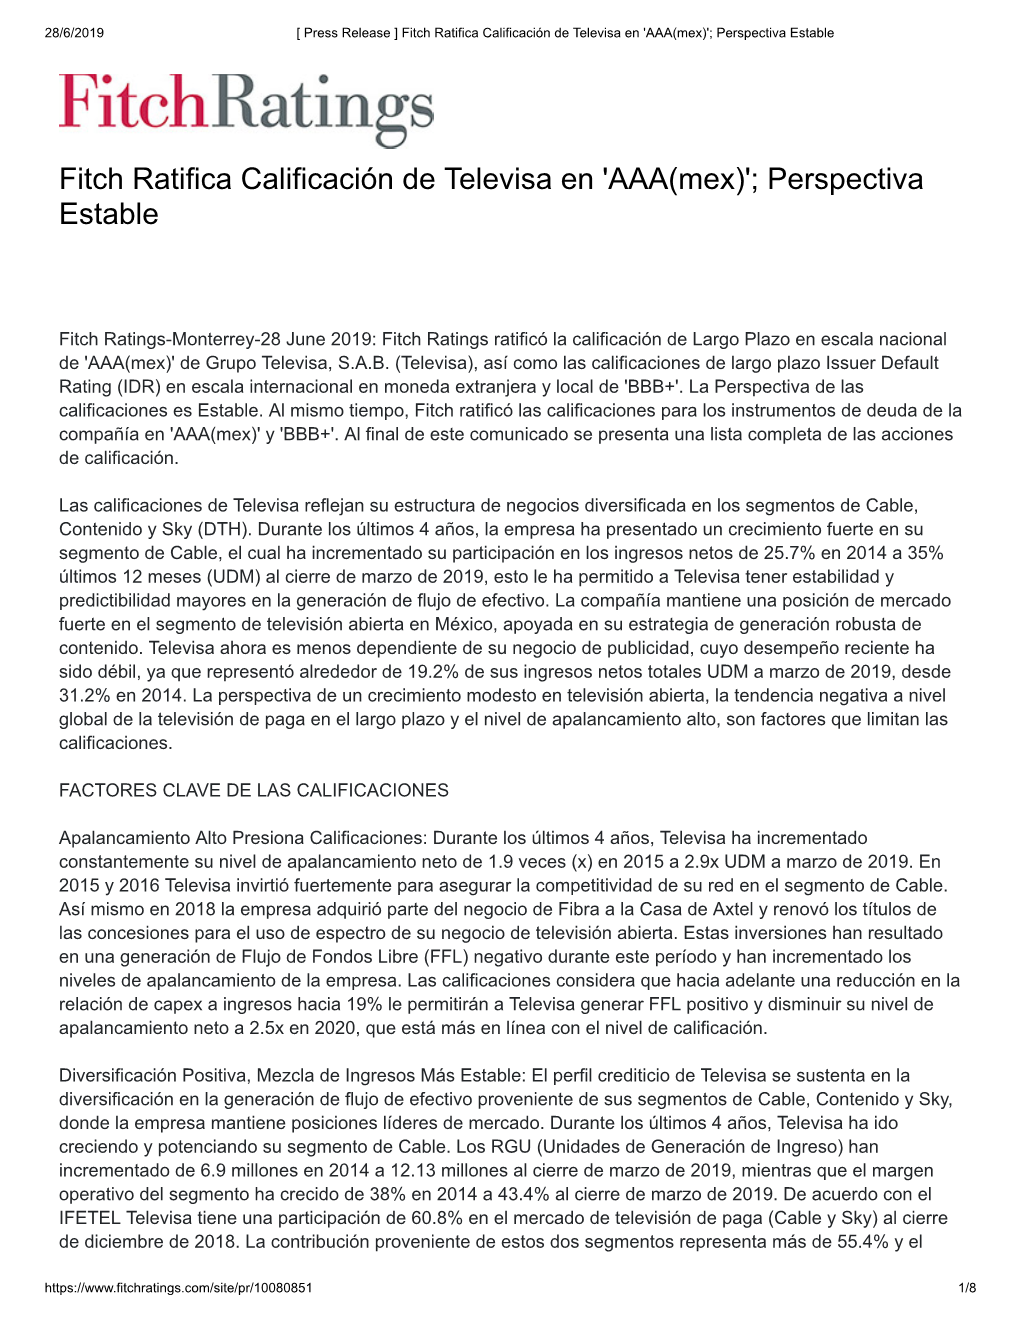 Fitch Ratifica Calificación De Televisa En 'AAA(Mex)'; Perspectiva Estable